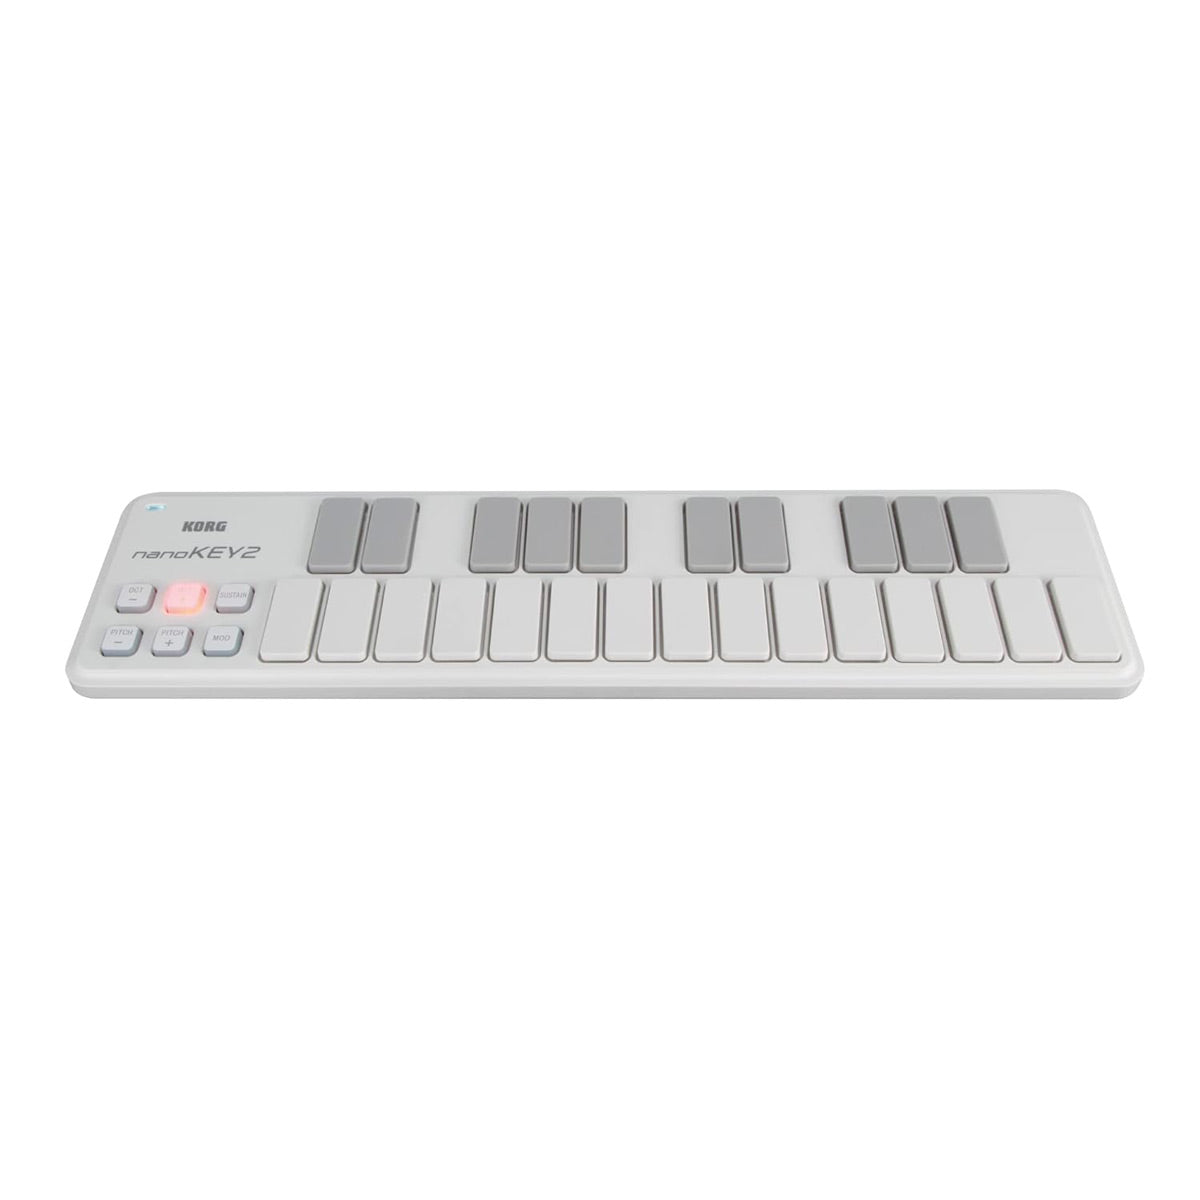 Korg NANOKEY2 Slim Line USB Midi Keyboard - White